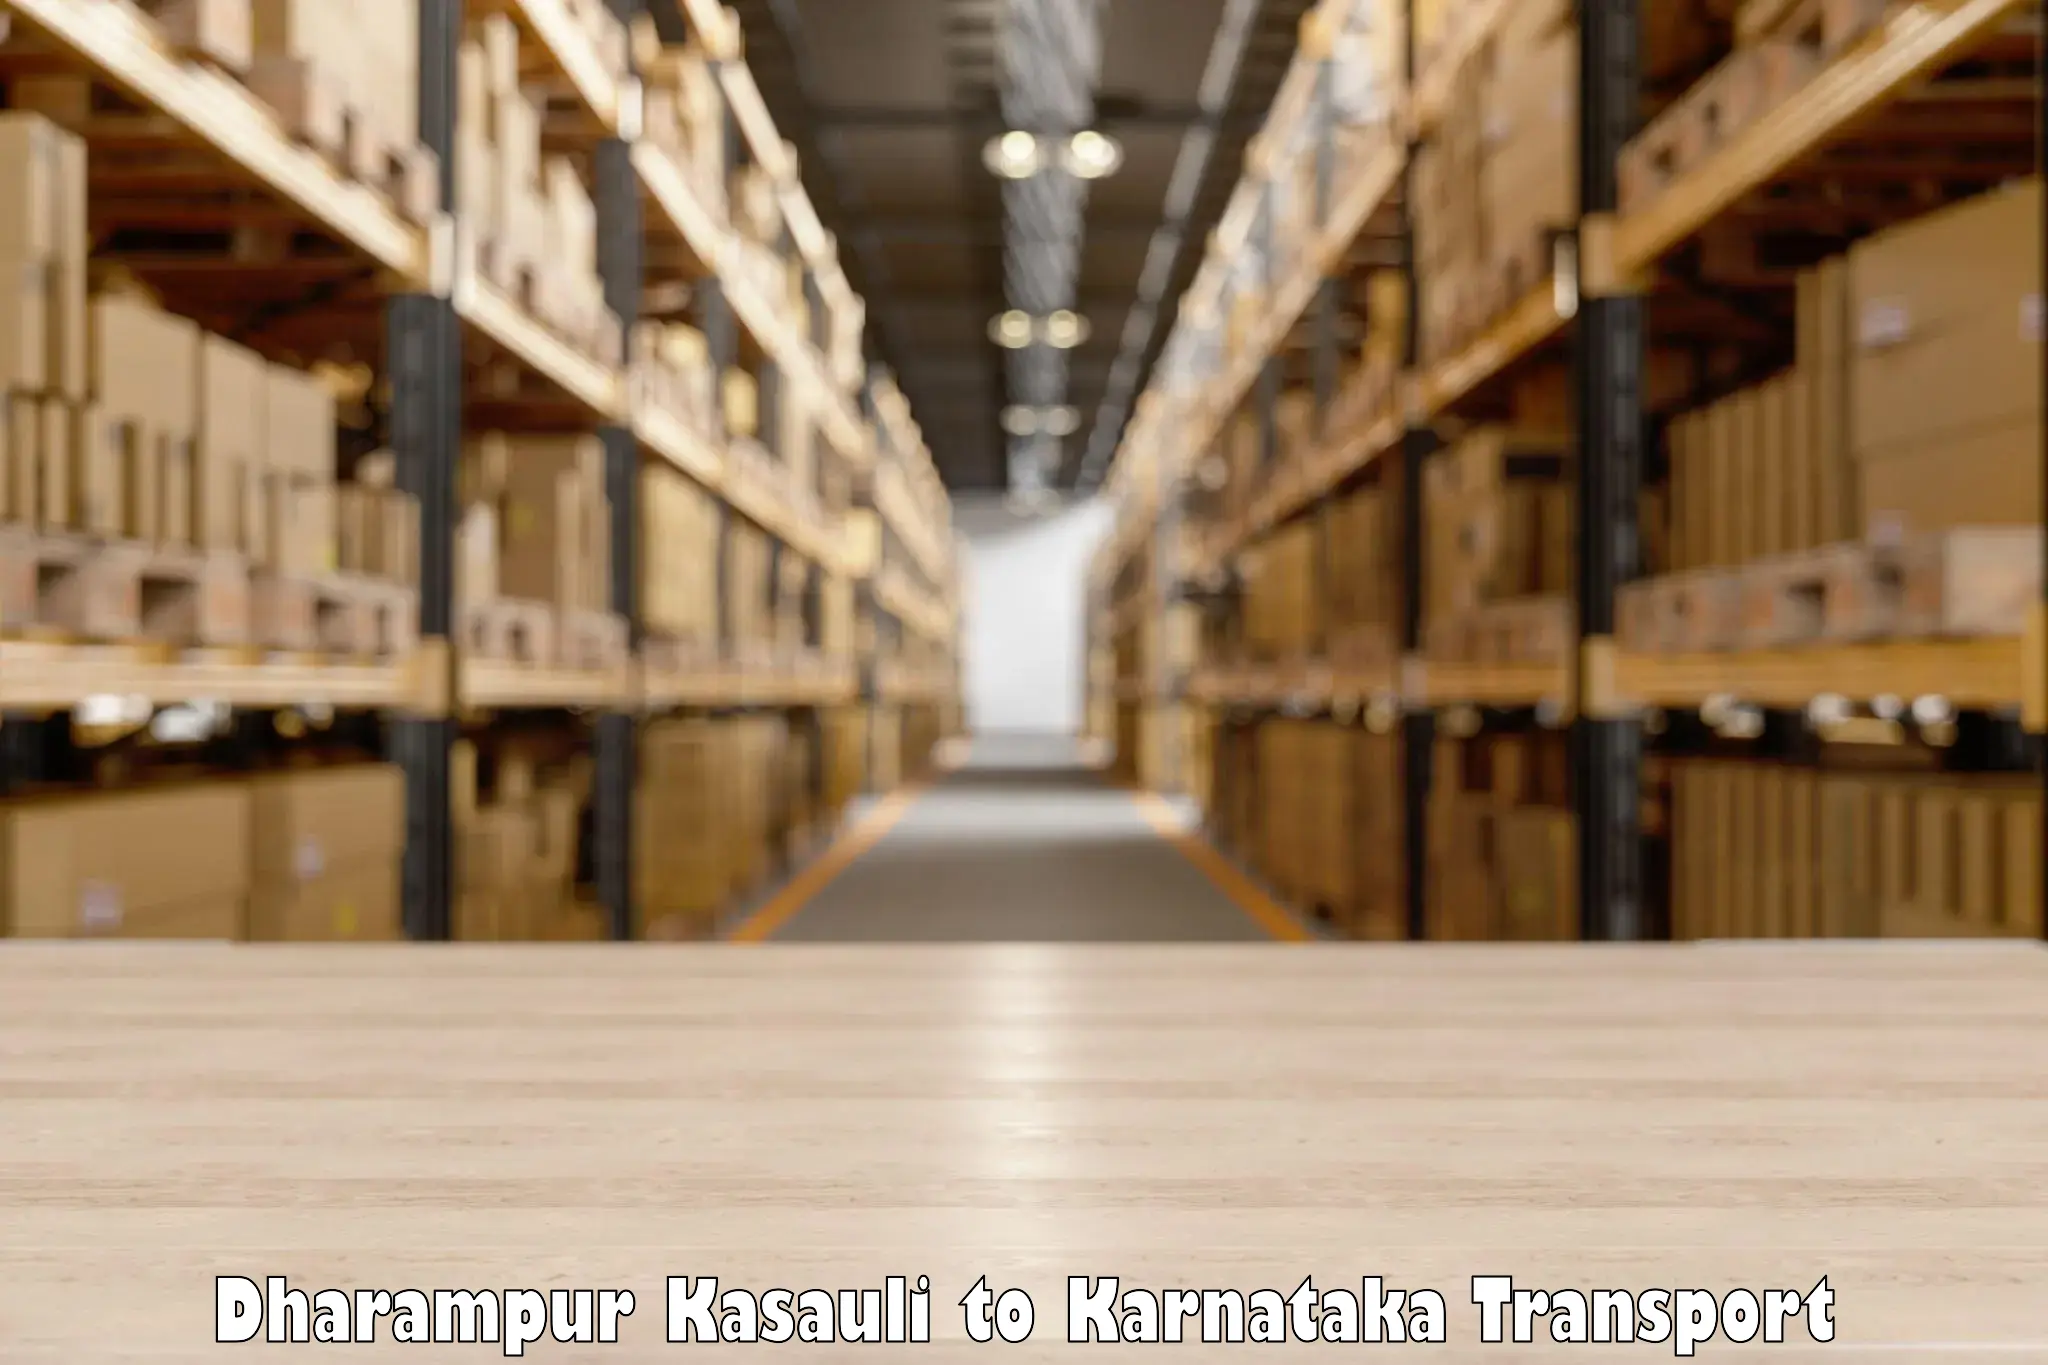 Online transport booking Dharampur Kasauli to Mangalore